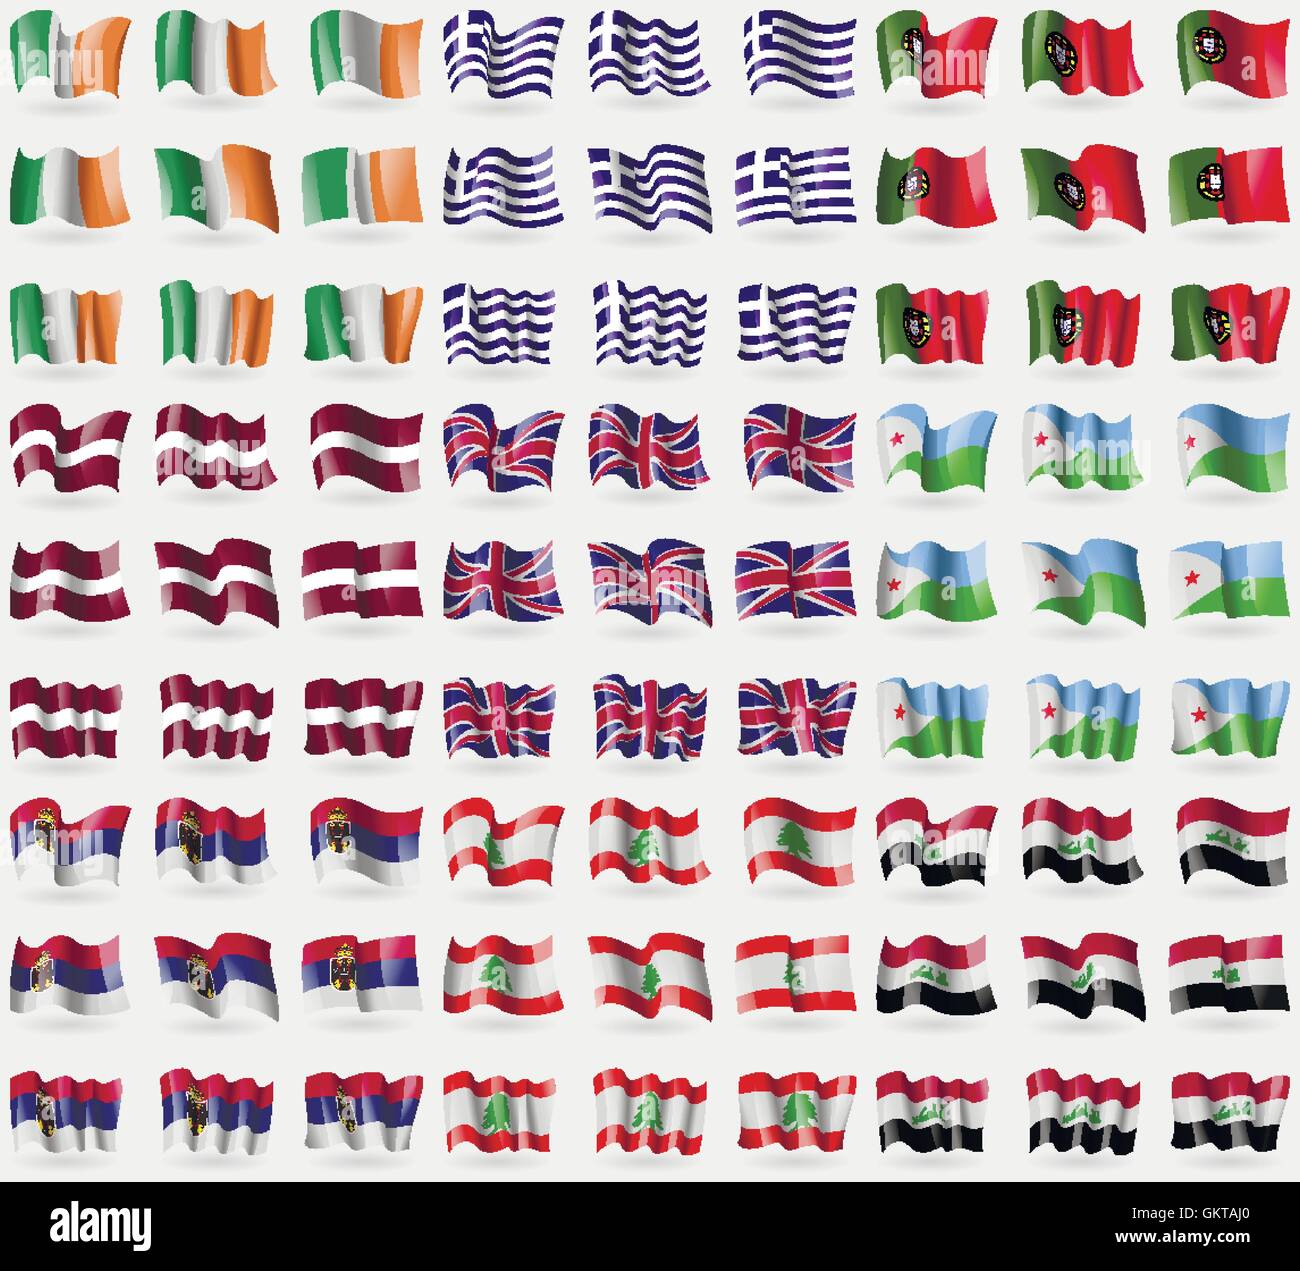 Irlanda, Grecia, Portogallo e Lettonia, Regno Unito, Gibuti, Serbia, Libano, Iraq. Grande set di 81 bandiere. Vettore Illustrazione Vettoriale